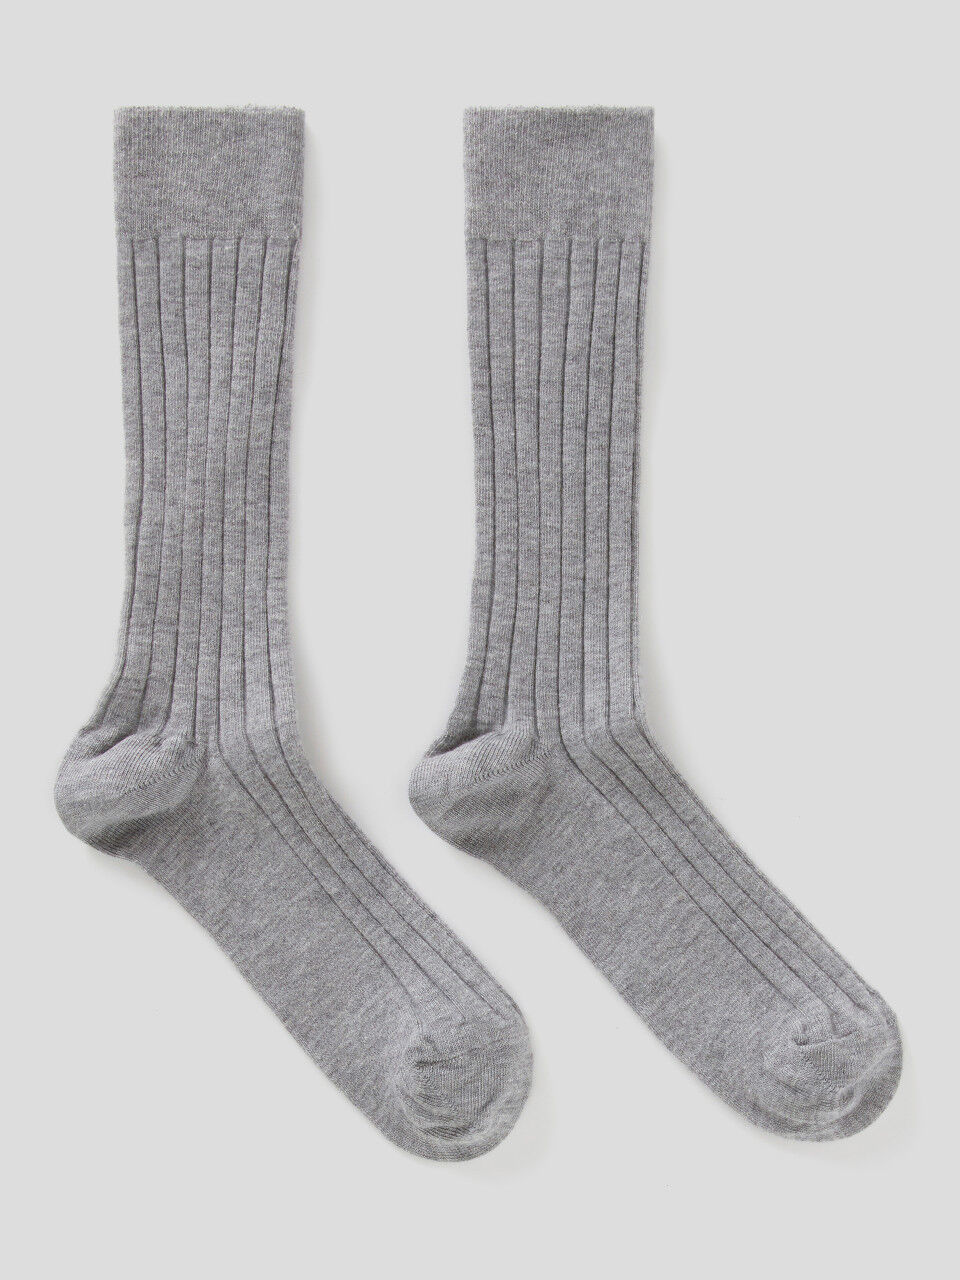 Socken in einer Cashmeremischung